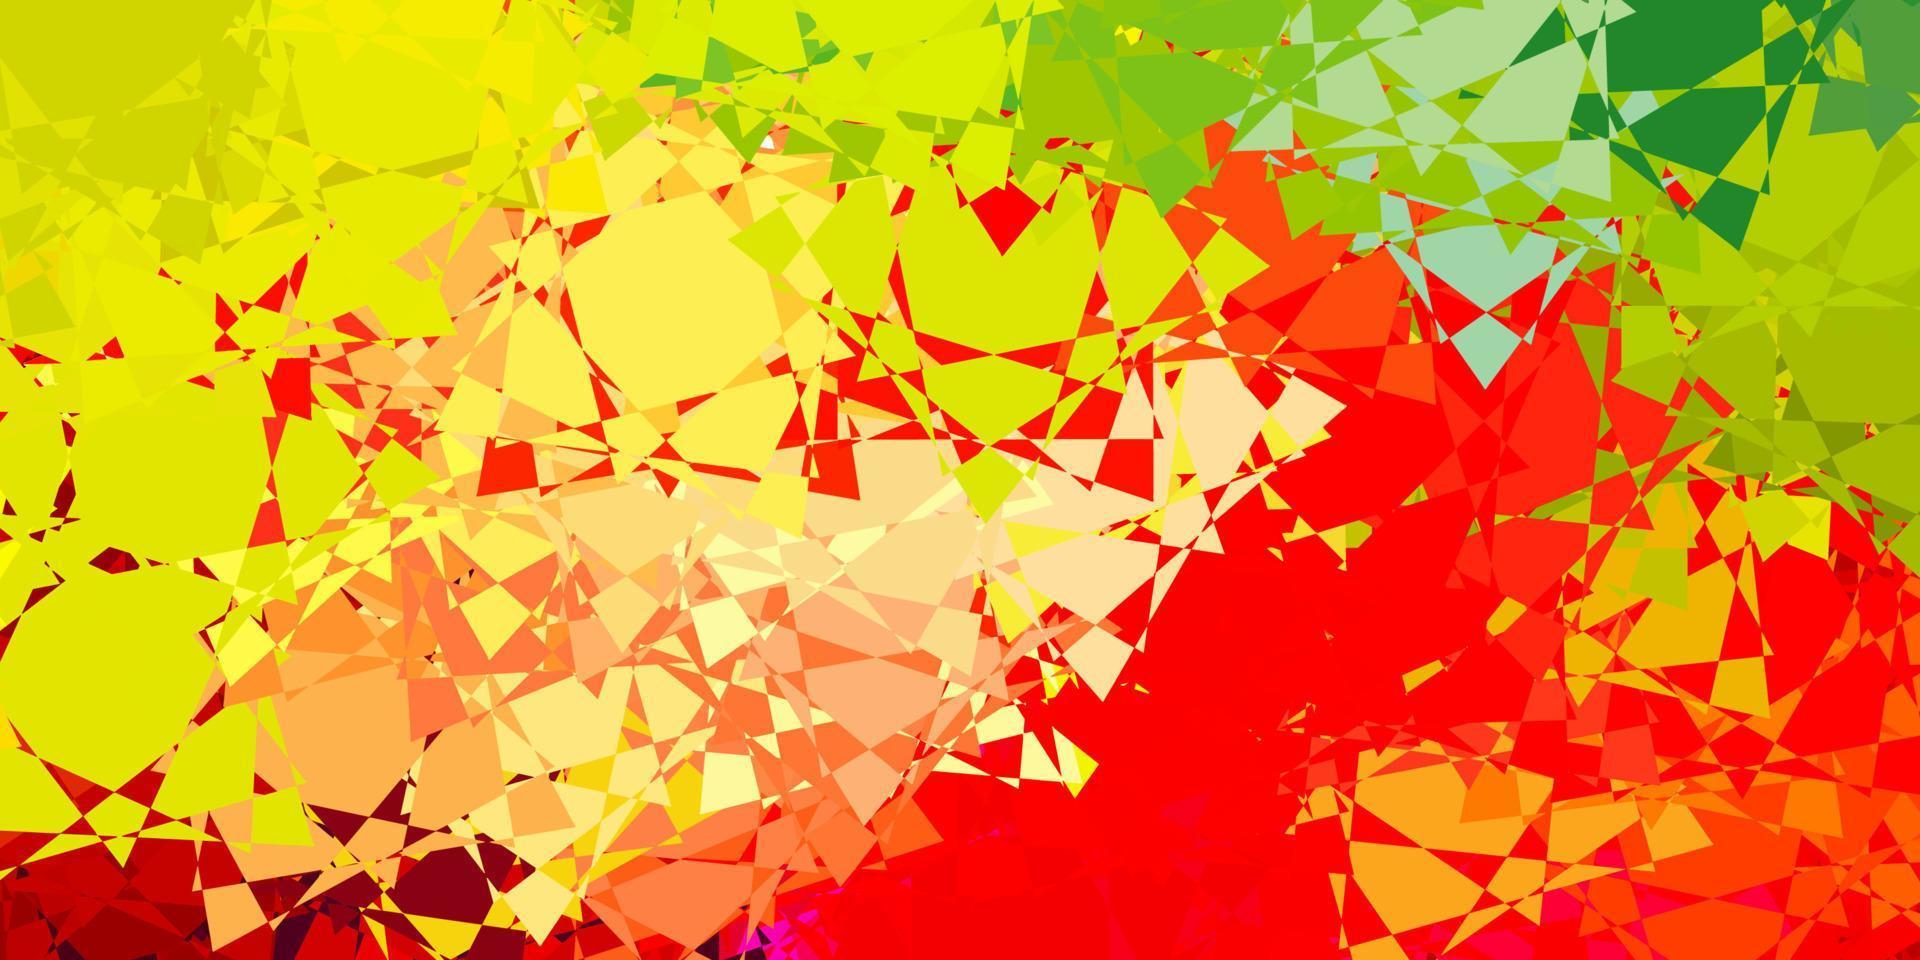 toile de fond de vecteur multicolore sombre avec des triangles, des lignes.